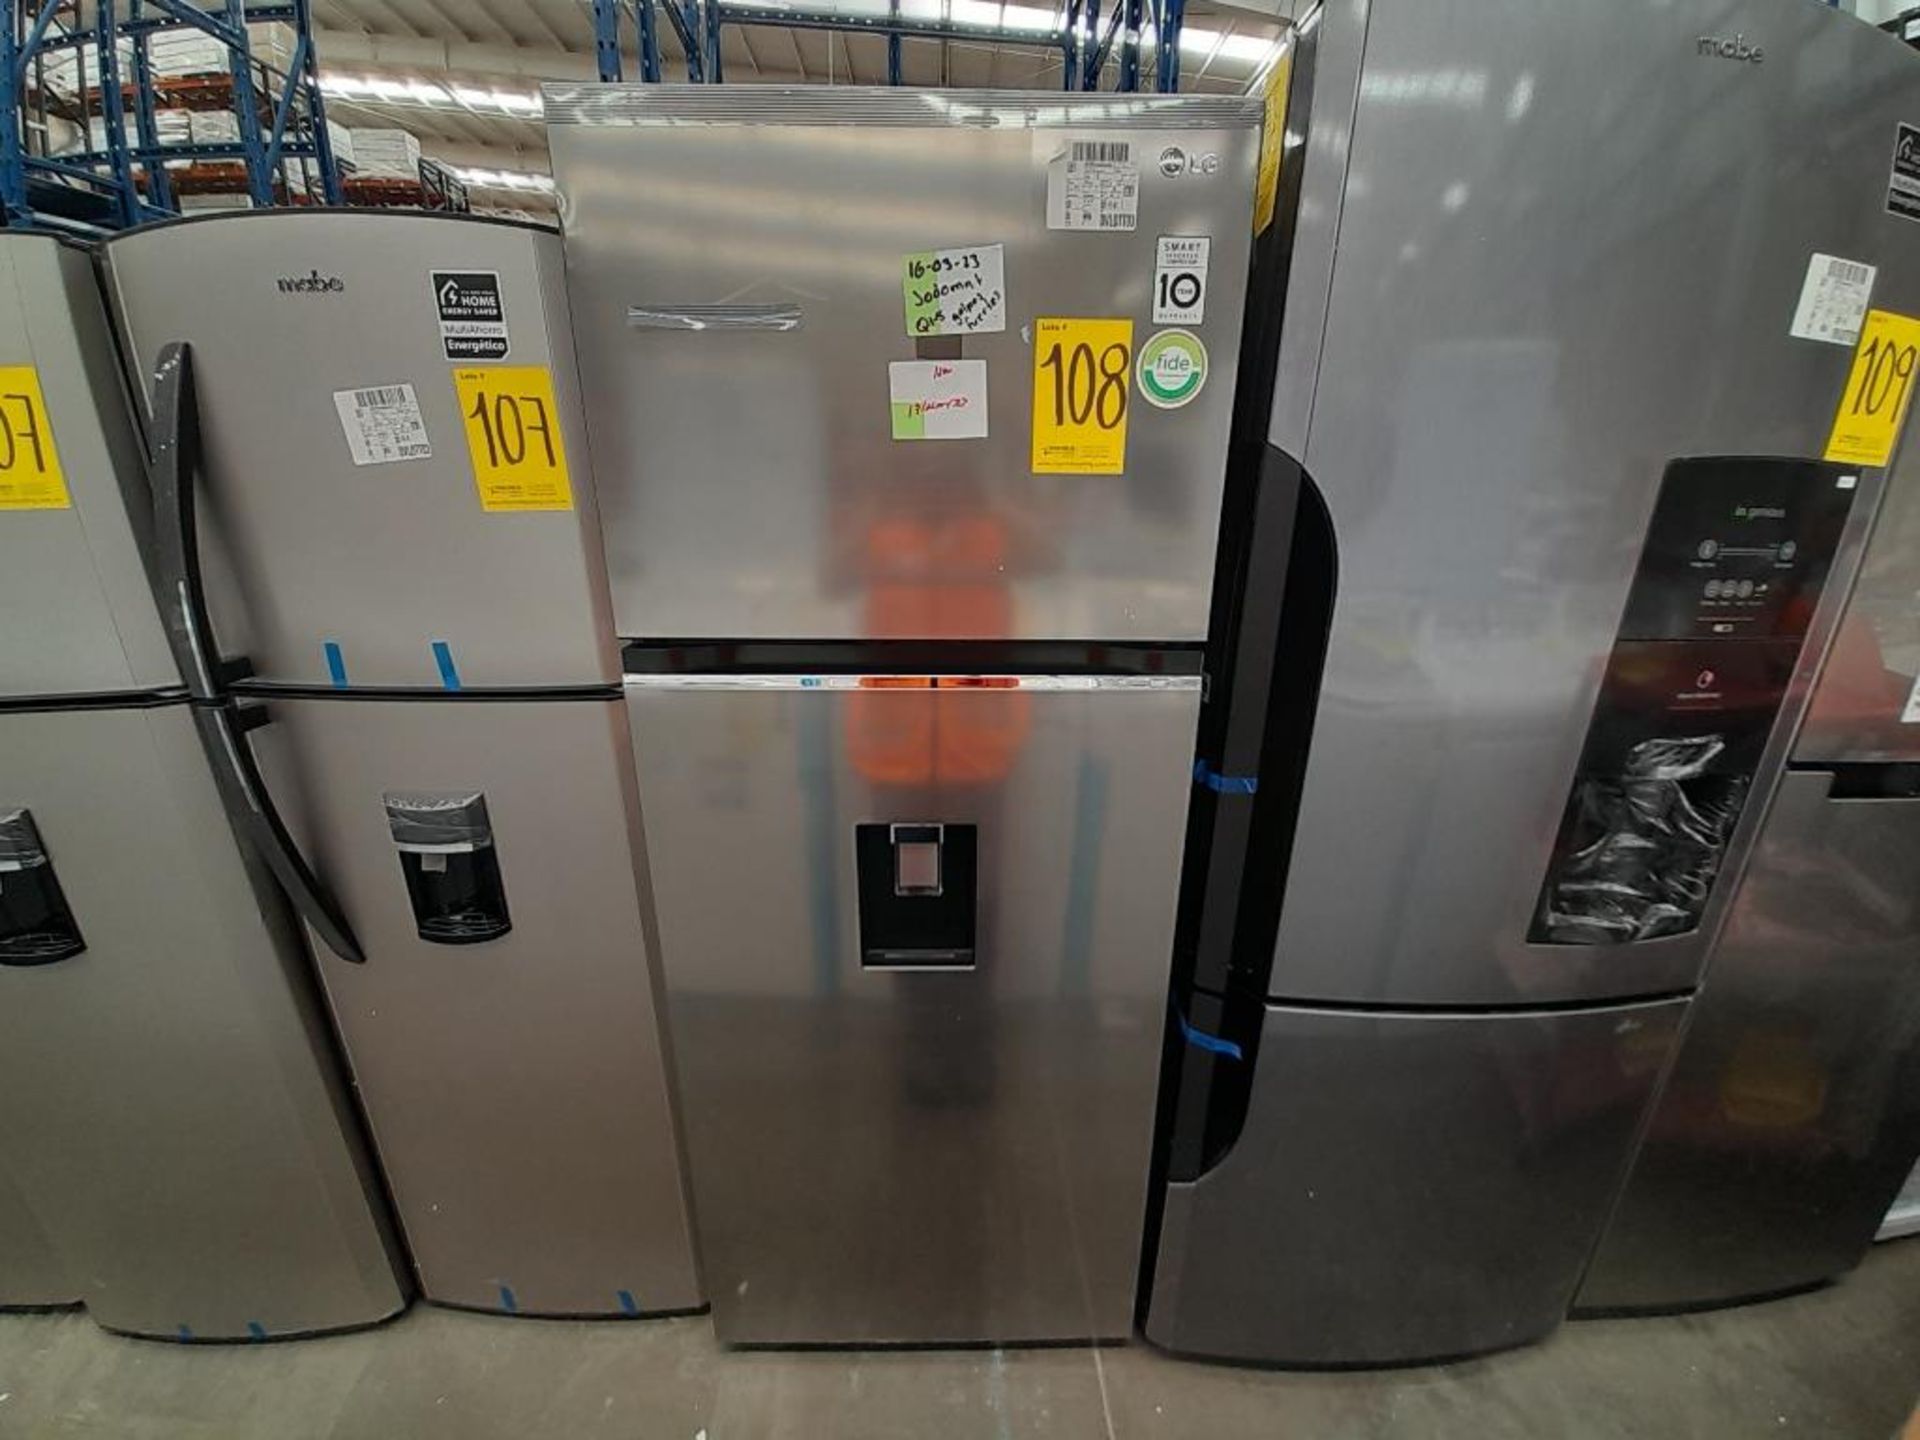 Lote de 1 Refrigerador con dispensador de agua Marca LG, Modelo VT40WP, Serie V2P969, Color GRI